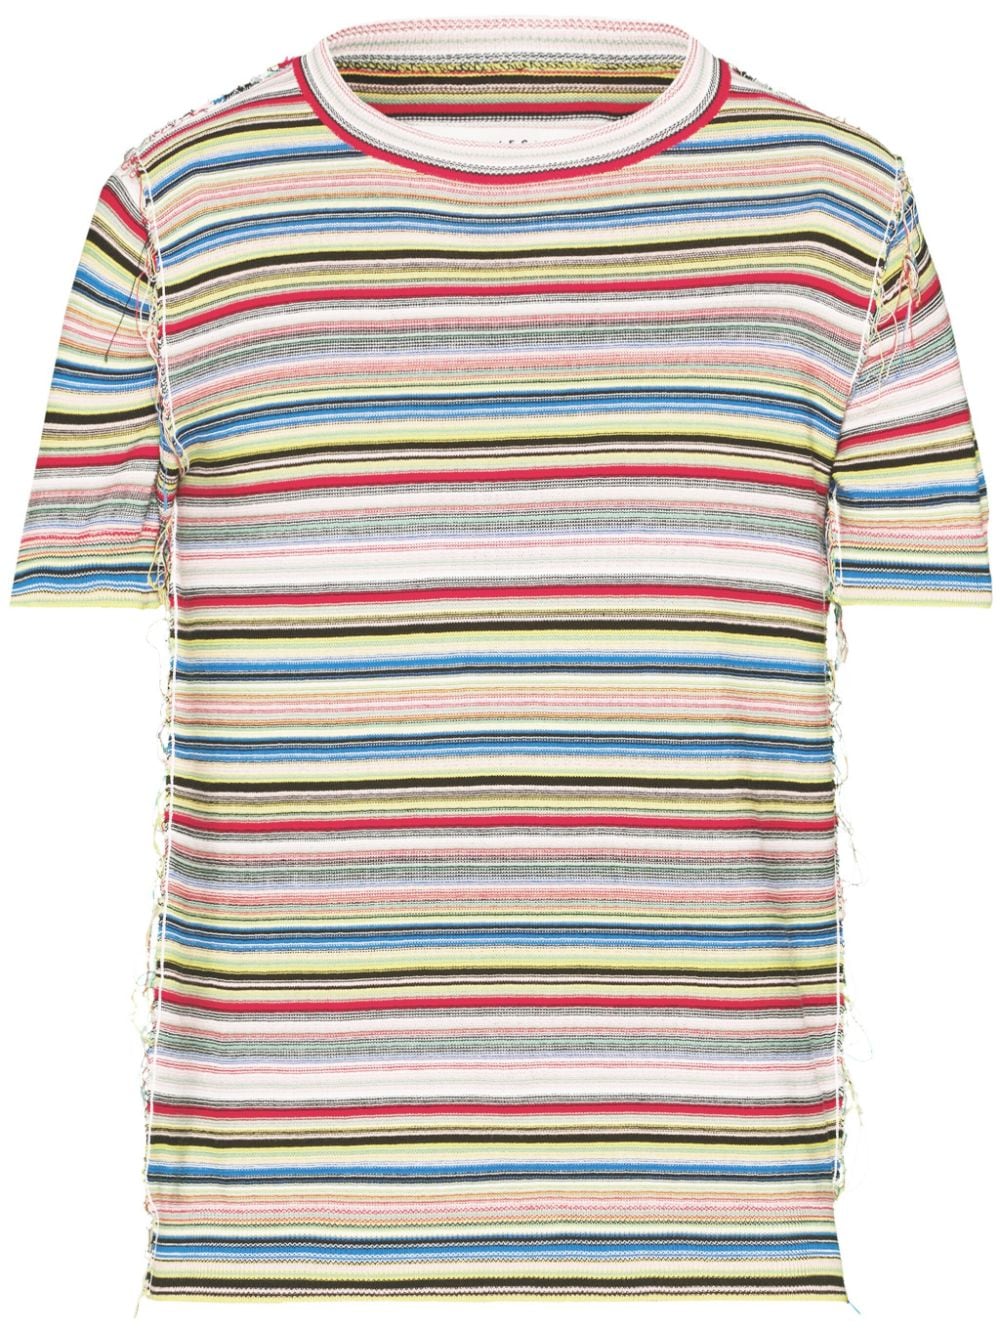 MAISON MARGIELA Striped Multicolor Cotton T-Shirt for Men - SS24 Collection